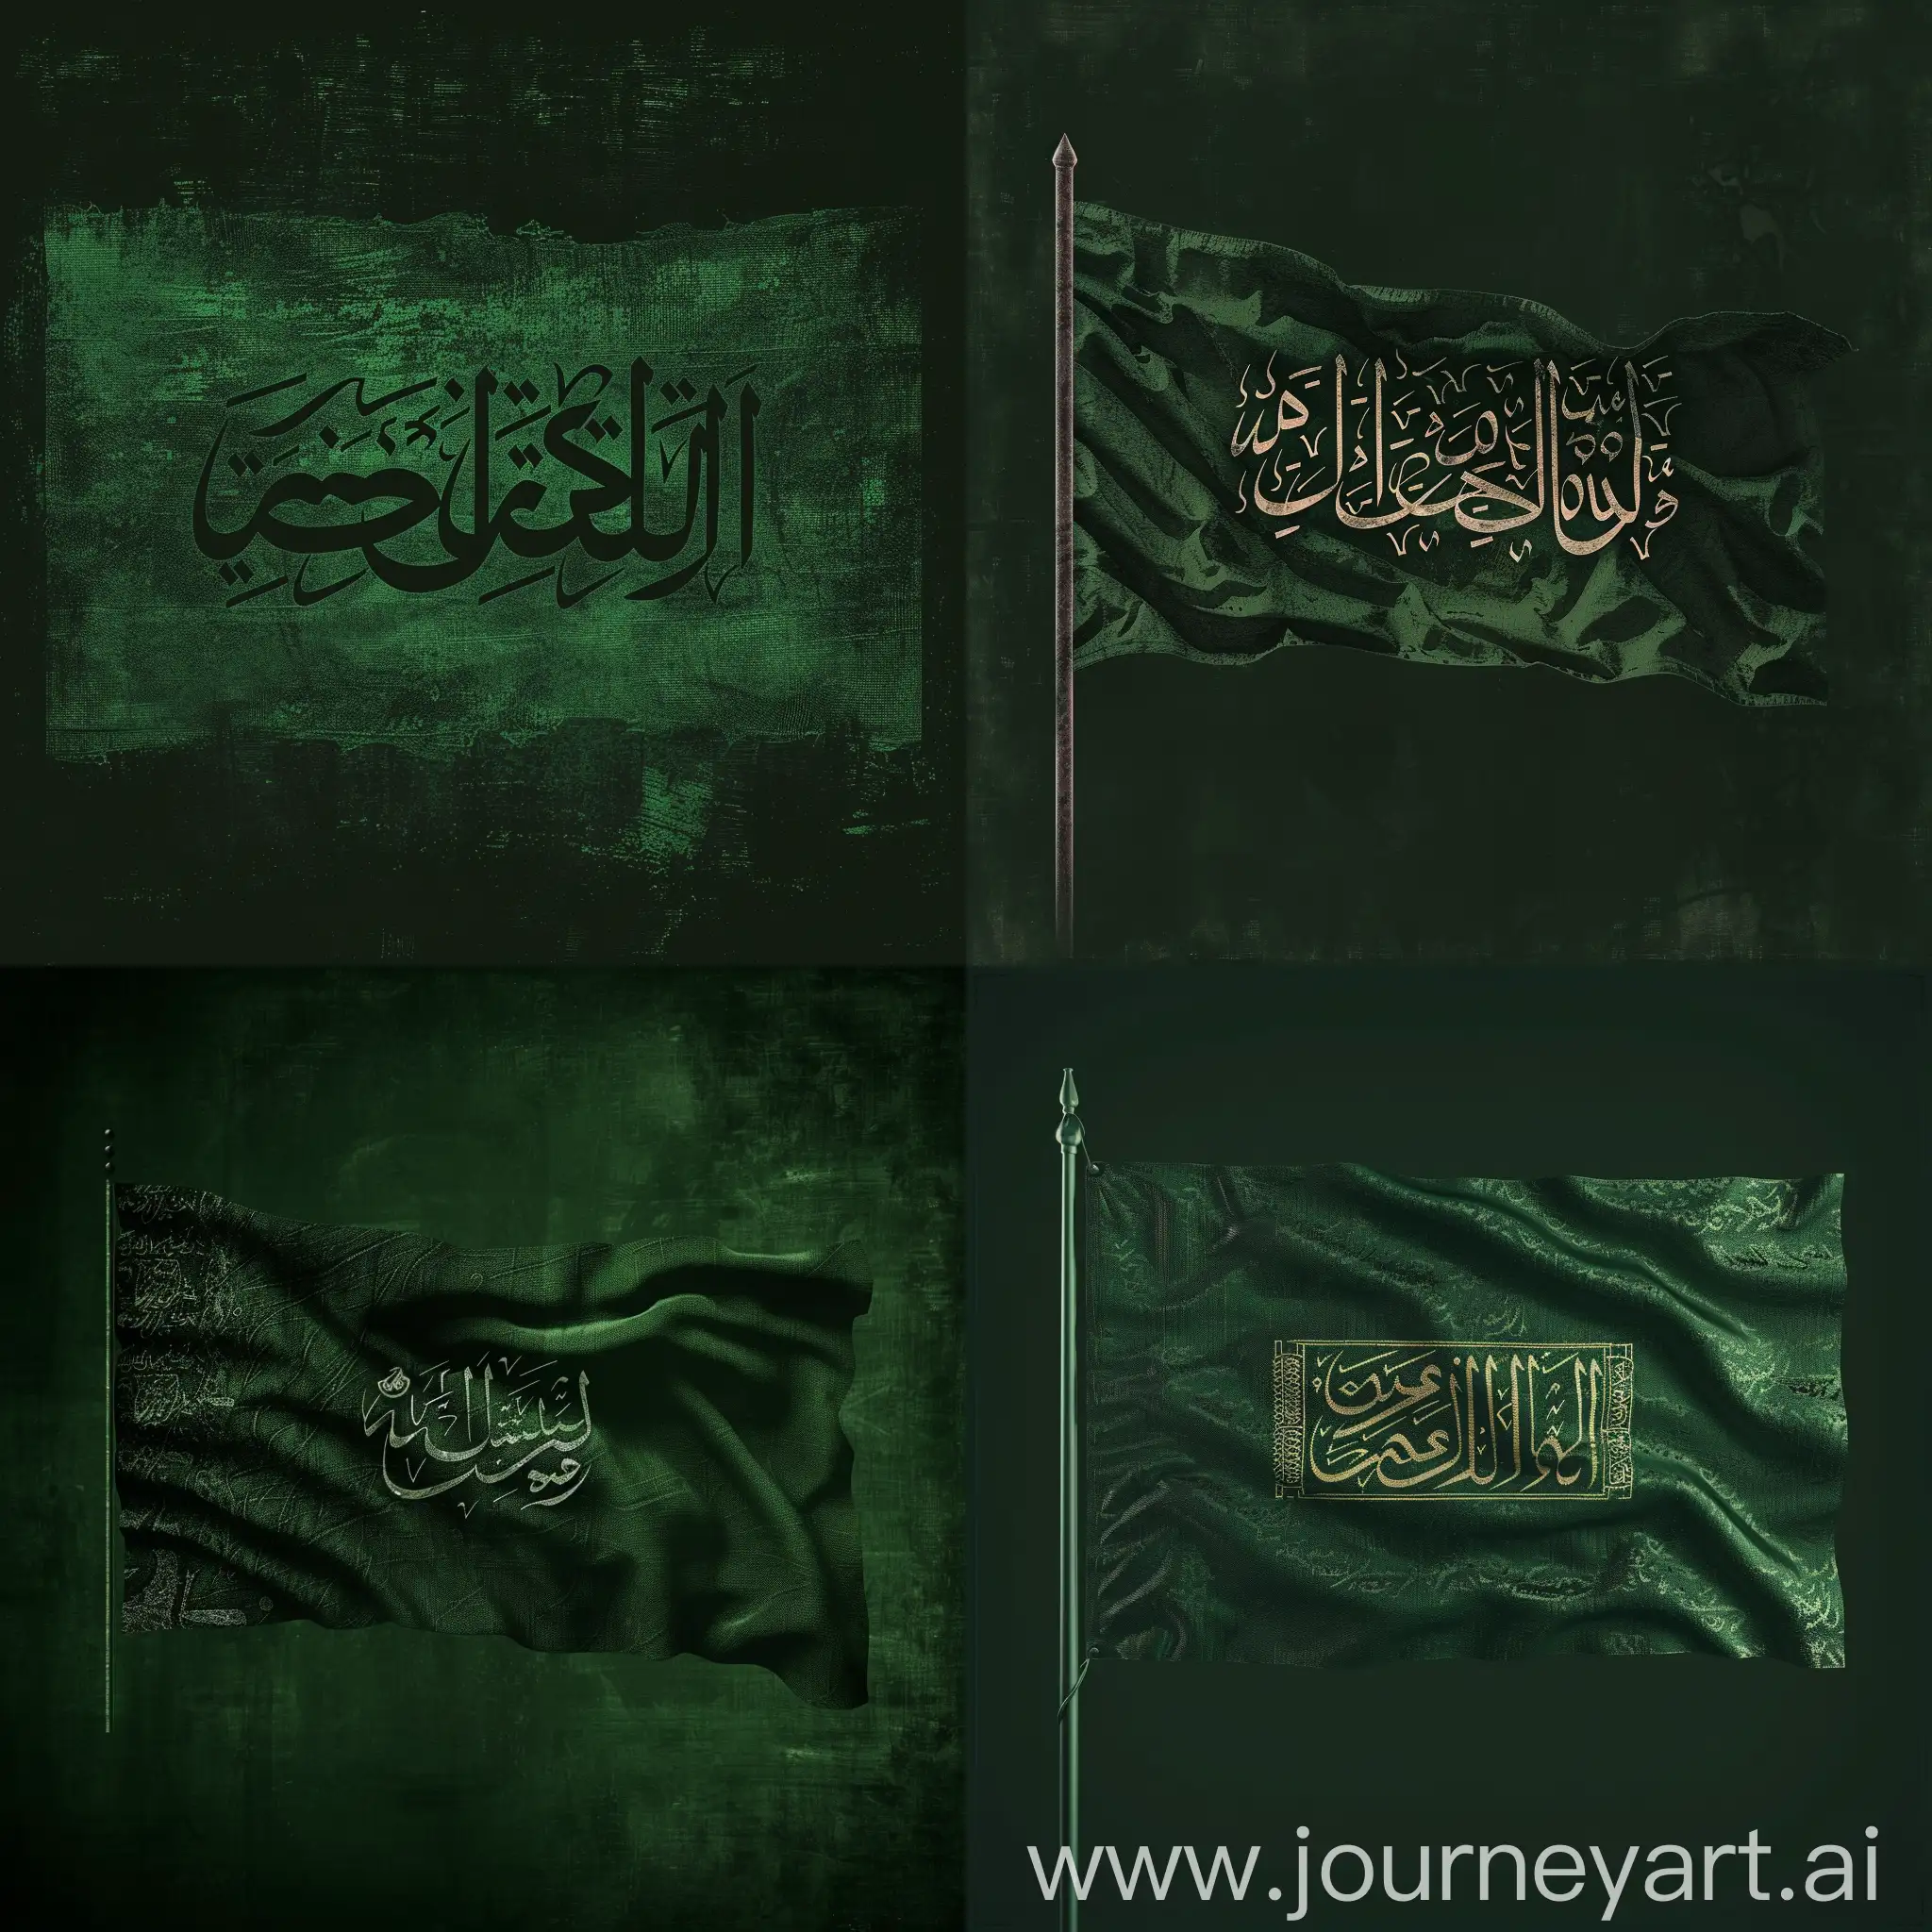 нужен флаг с фоном темно-зеленый . В середине надпись "لا إله إلا الله محمد رسول الله" с шрифтом thuluth